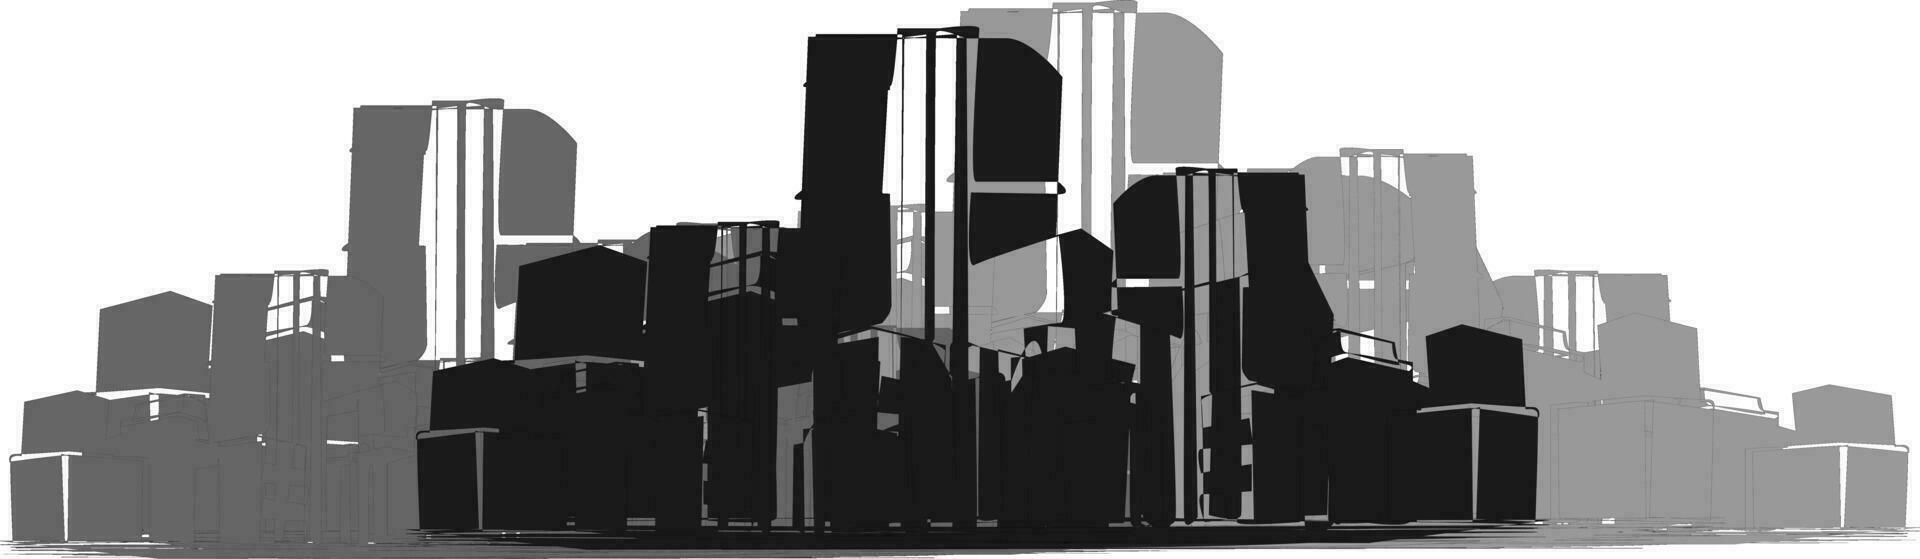 horizonte de la ciudad en blanco y negro vector